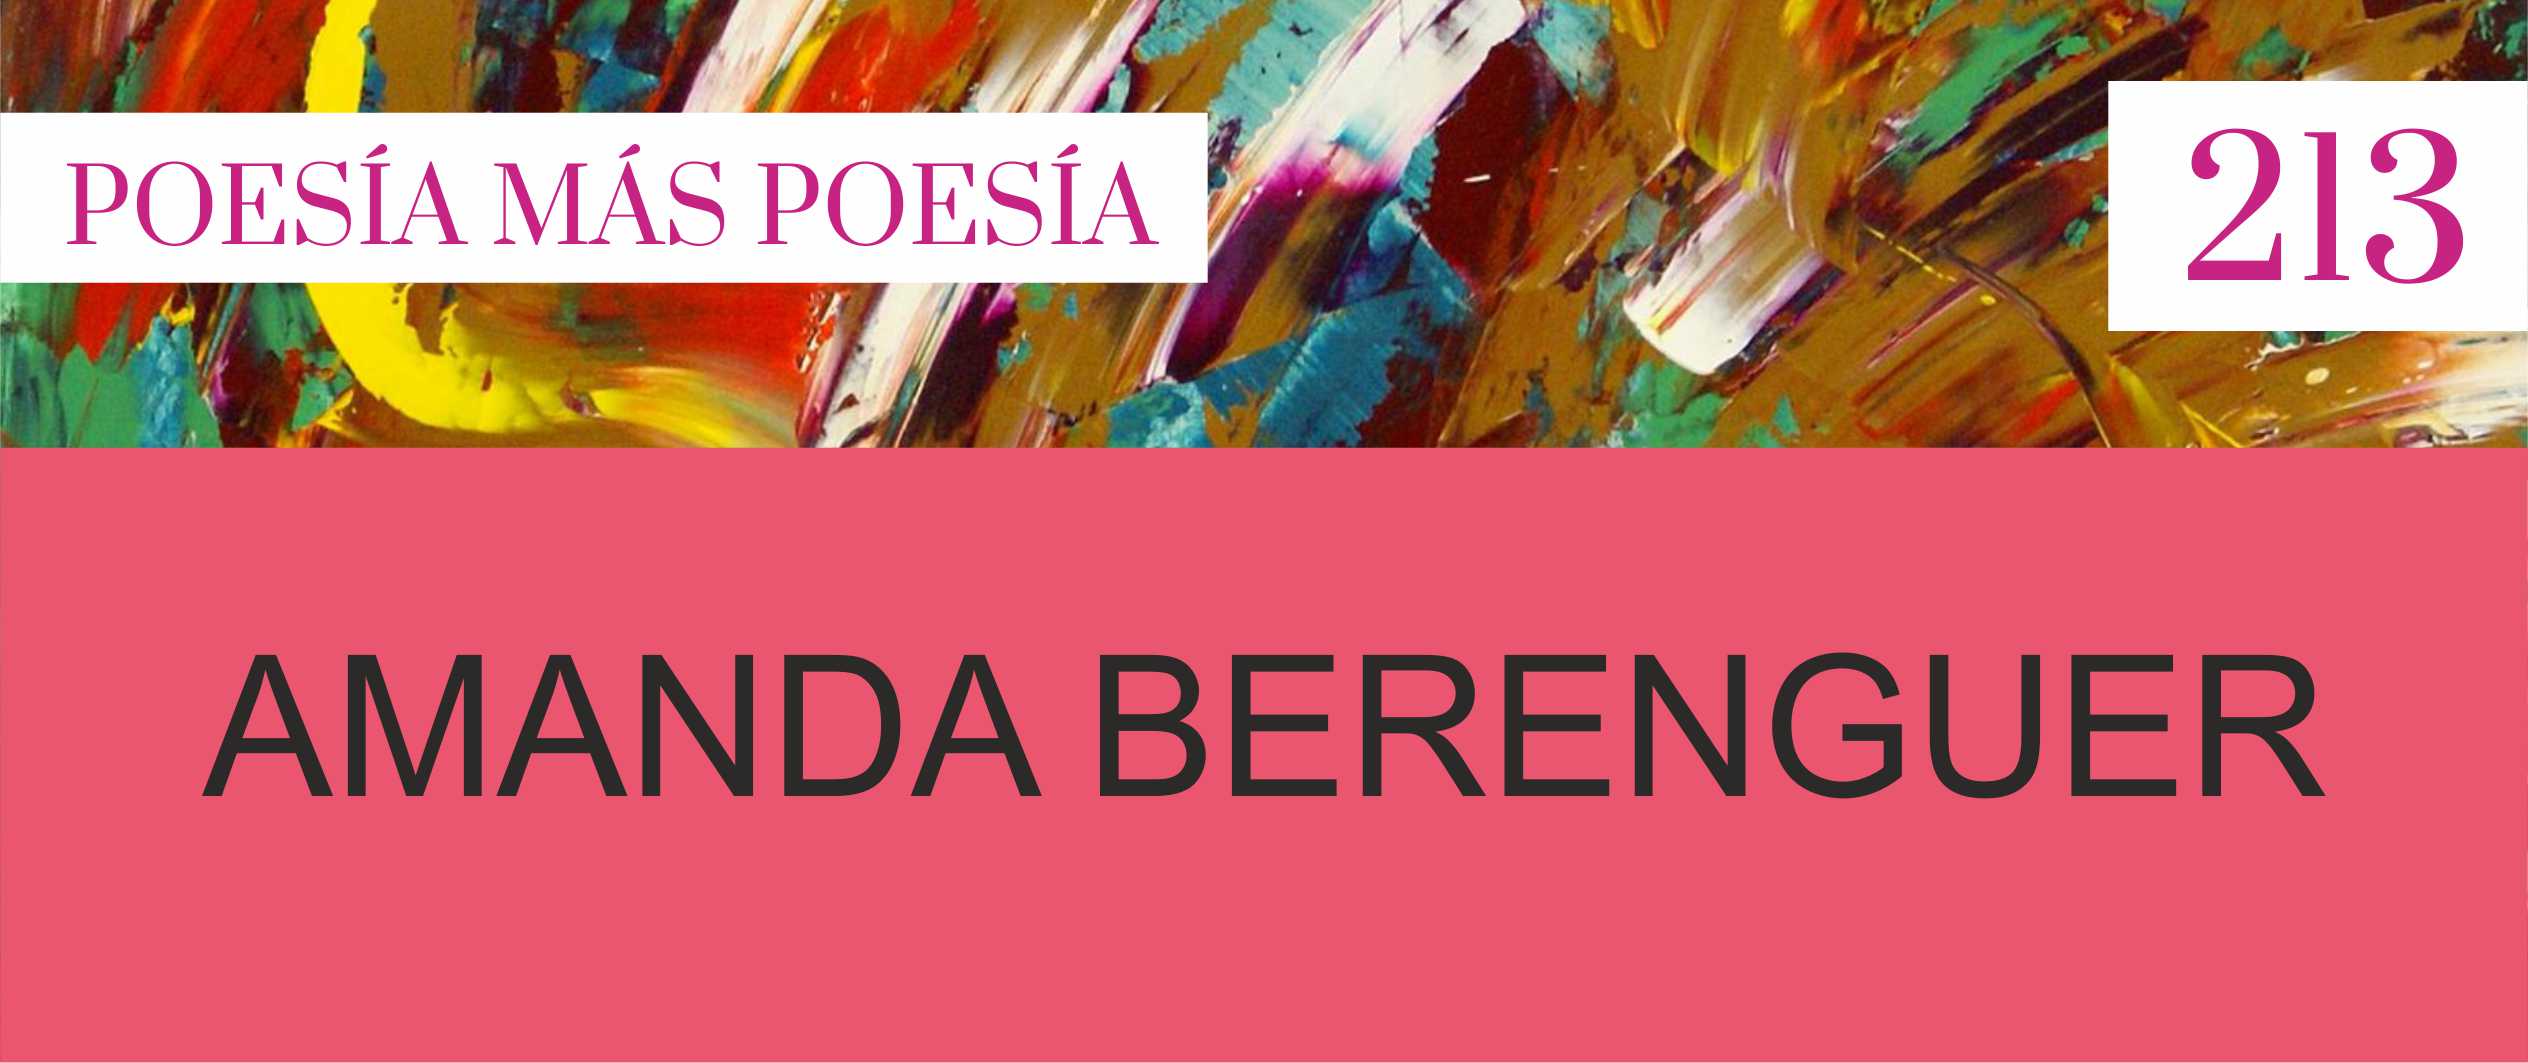 PORTADAS REVISTA POESIA MAS POESIA PARA SLIDER WEB 3 - Poesia Online